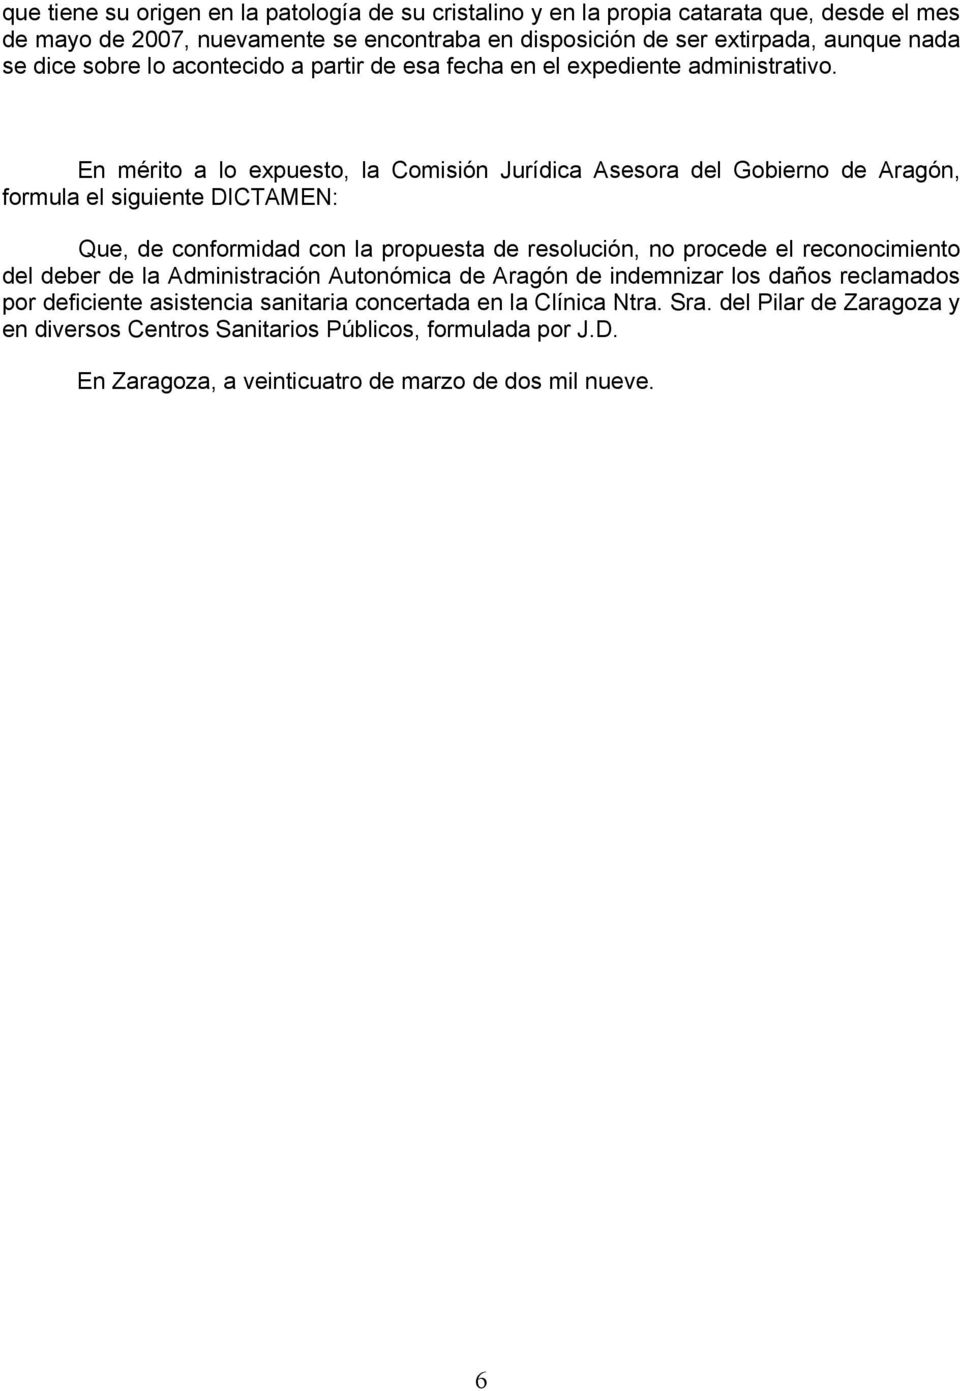 En mérito a lo expuesto, la Comisión Jurídica Asesora del Gobierno de Aragón, formula el siguiente DICTAMEN: Que, de conformidad con la propuesta de resolución, no procede el